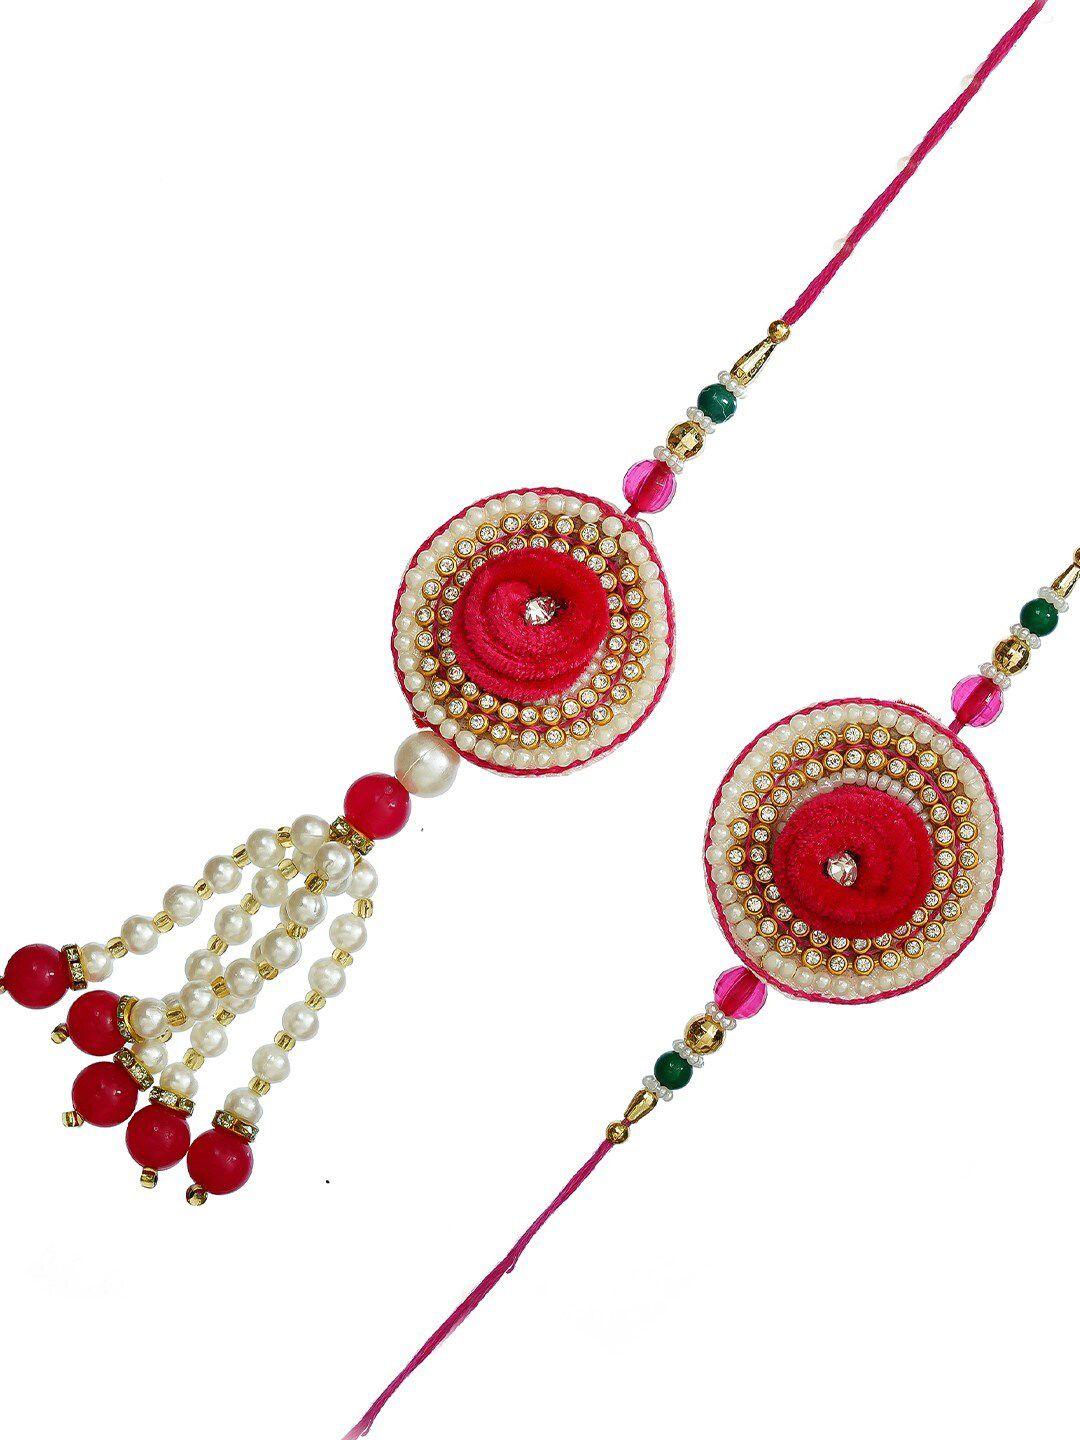 ecraftindia red & gold-toned rakhi gift set